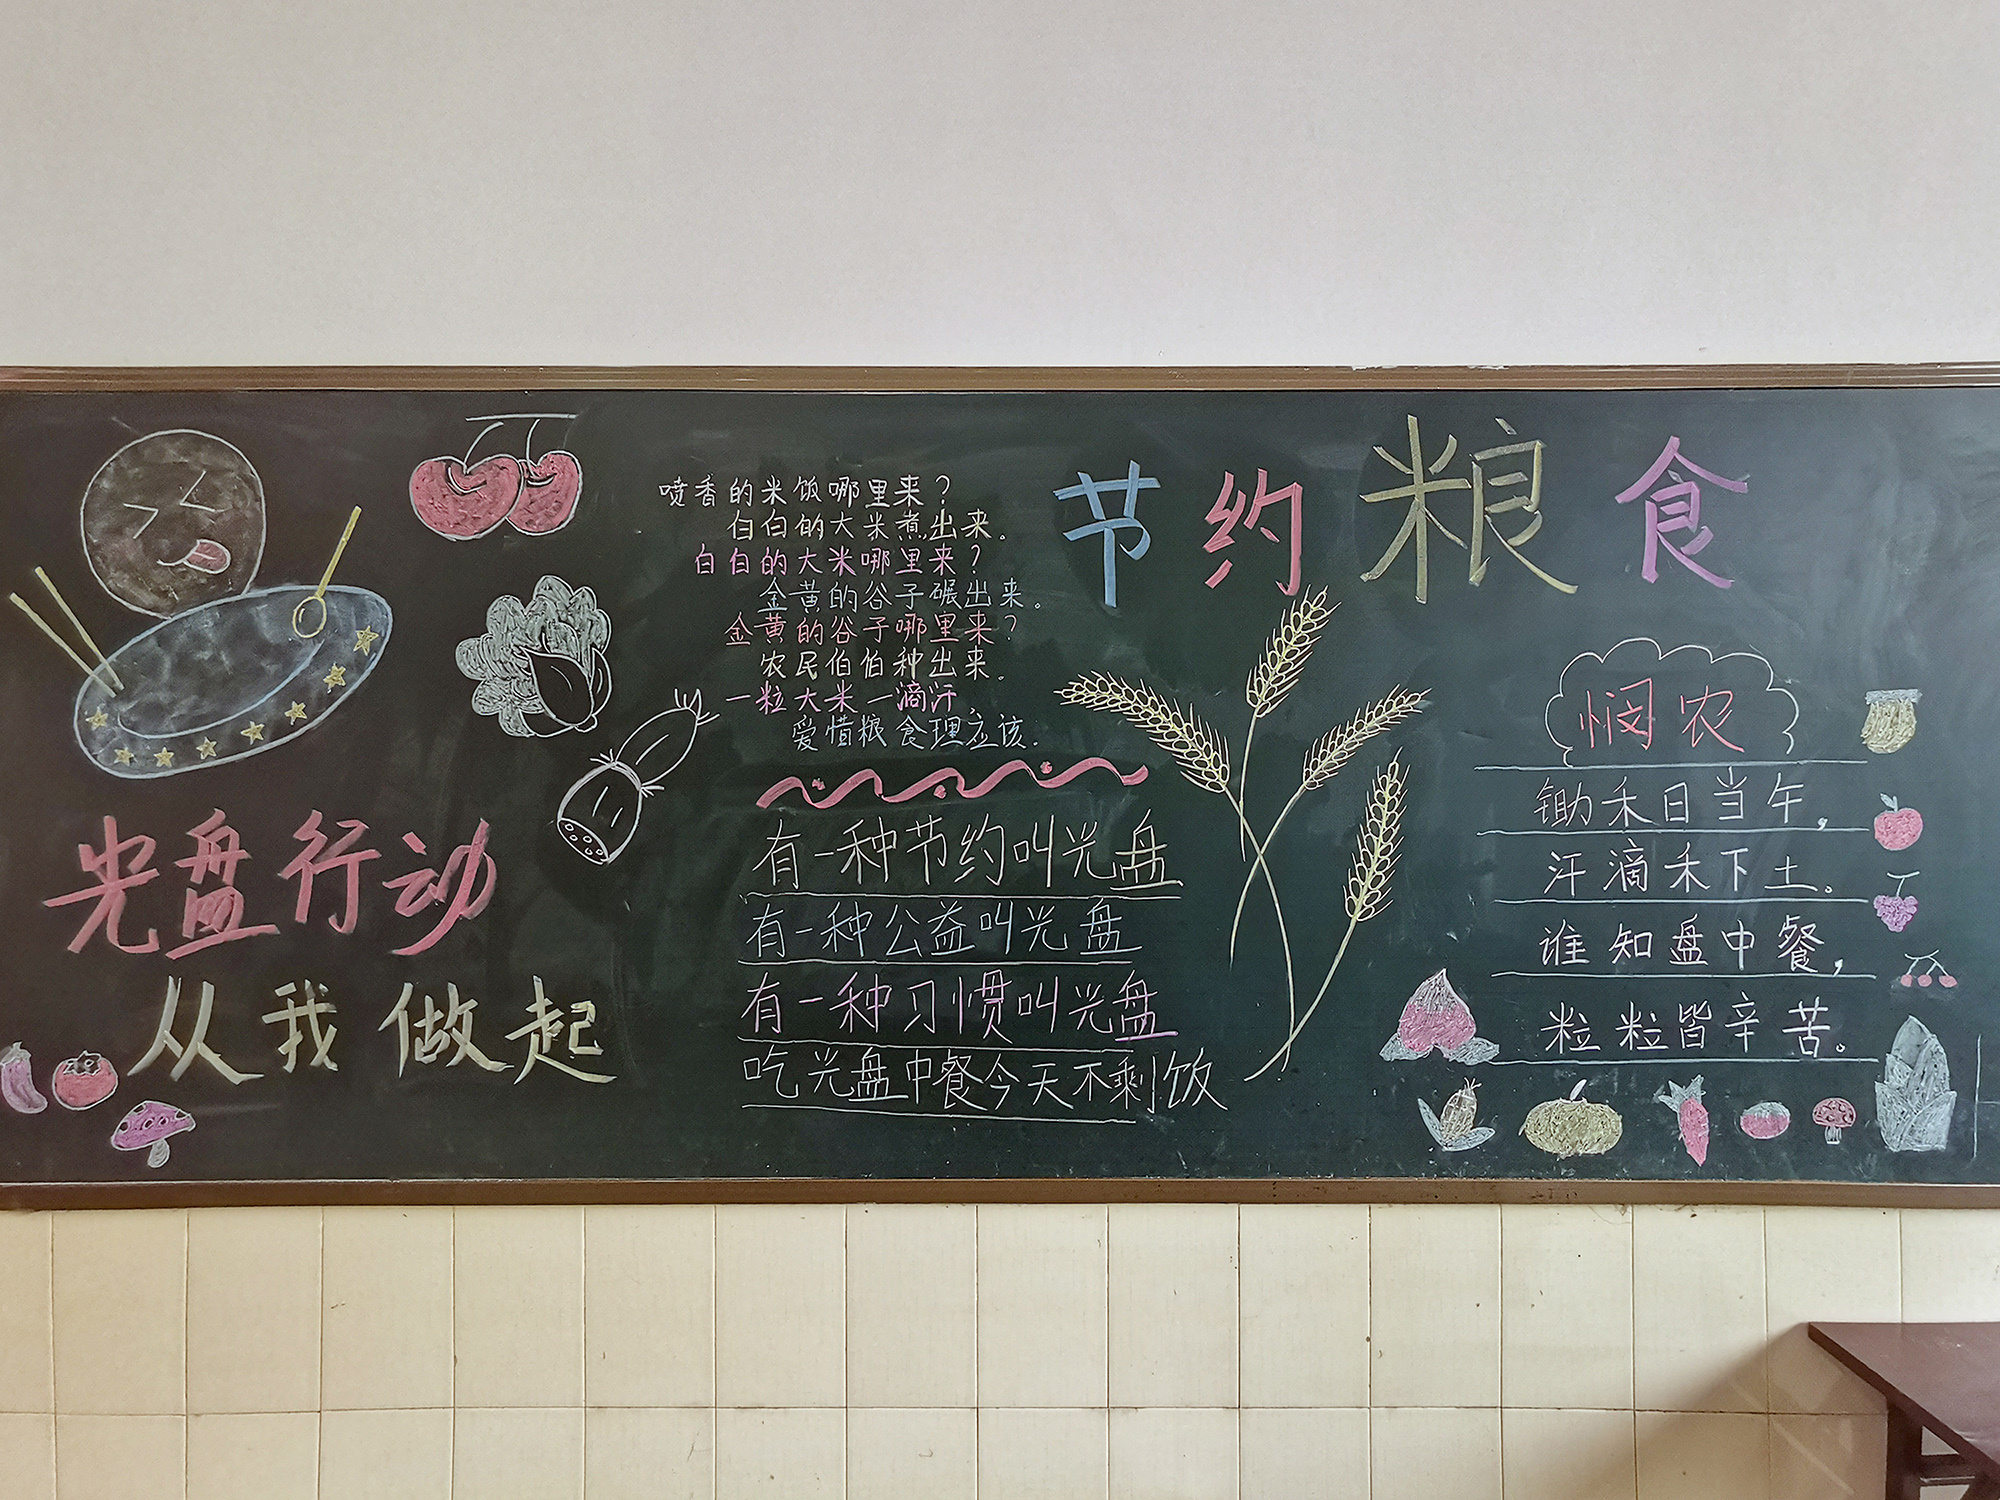 "节约粮食"黑板报 (摄影:杨宇豪)